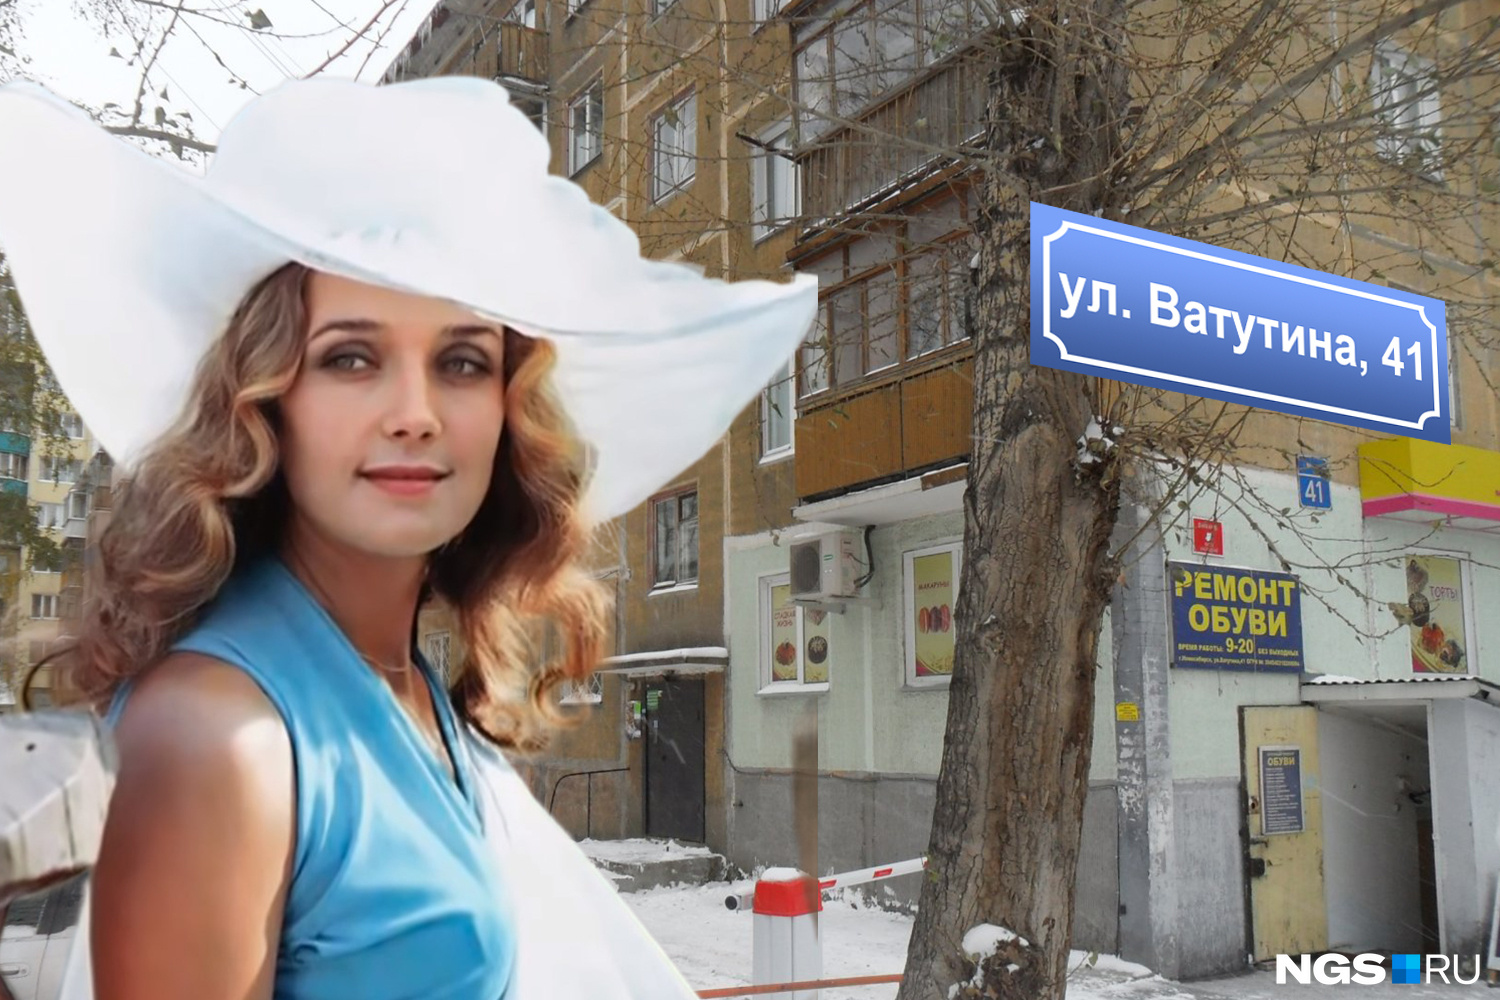 Ирина Алфёрова жила на Ватутина очень давно, но вдруг найдется кто-то, кто помнит соседство с будущей актрисой